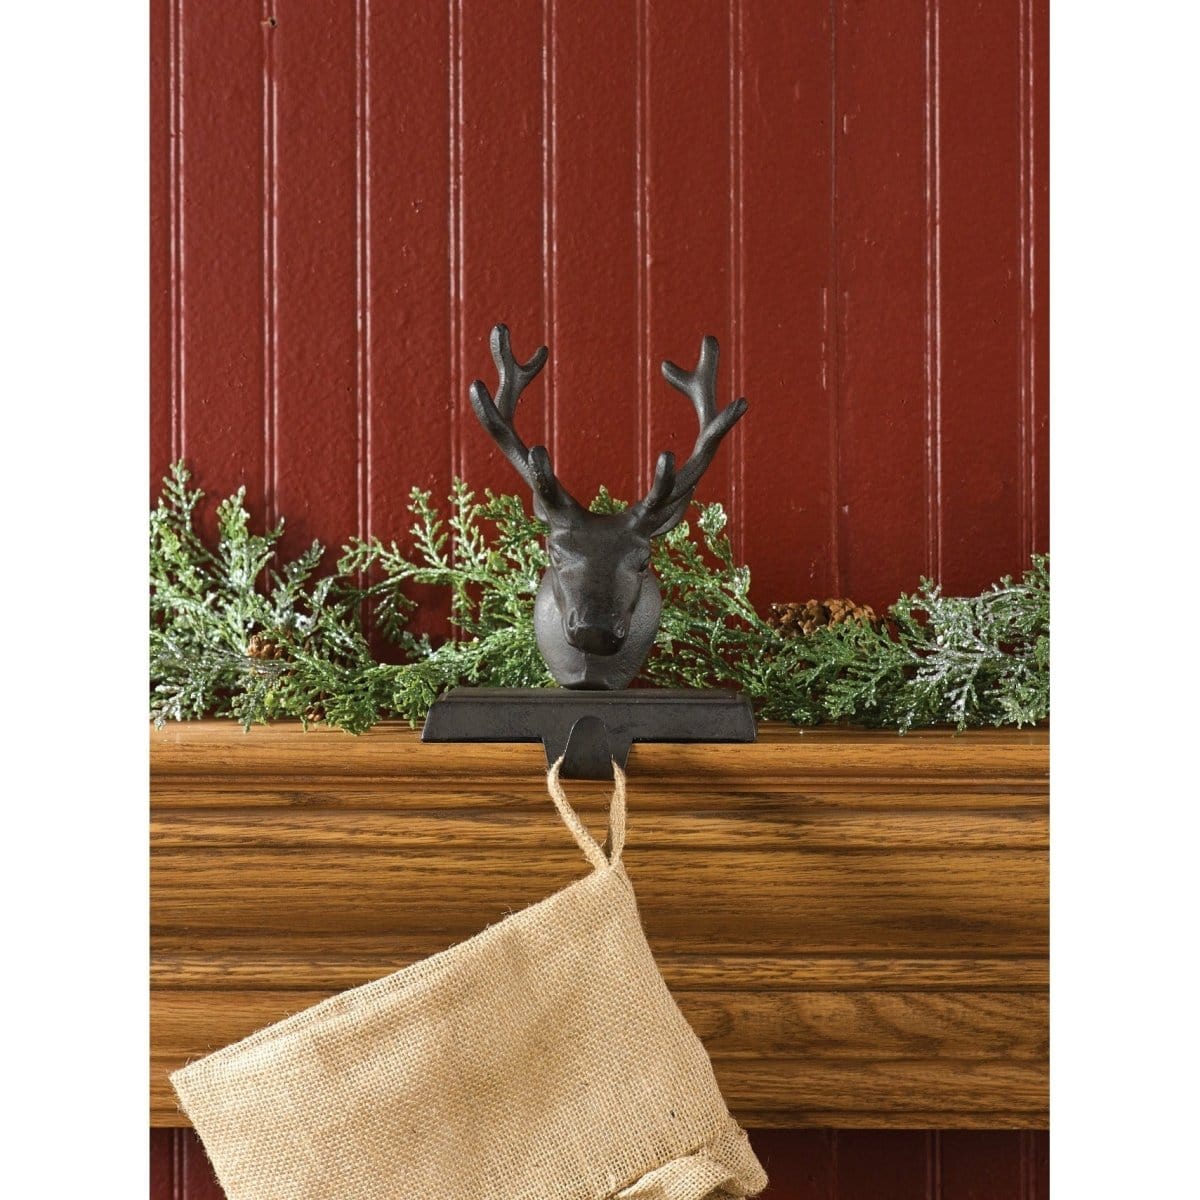 Iron Reindeer Stocking Holder-Park Designs-The Village Merchant